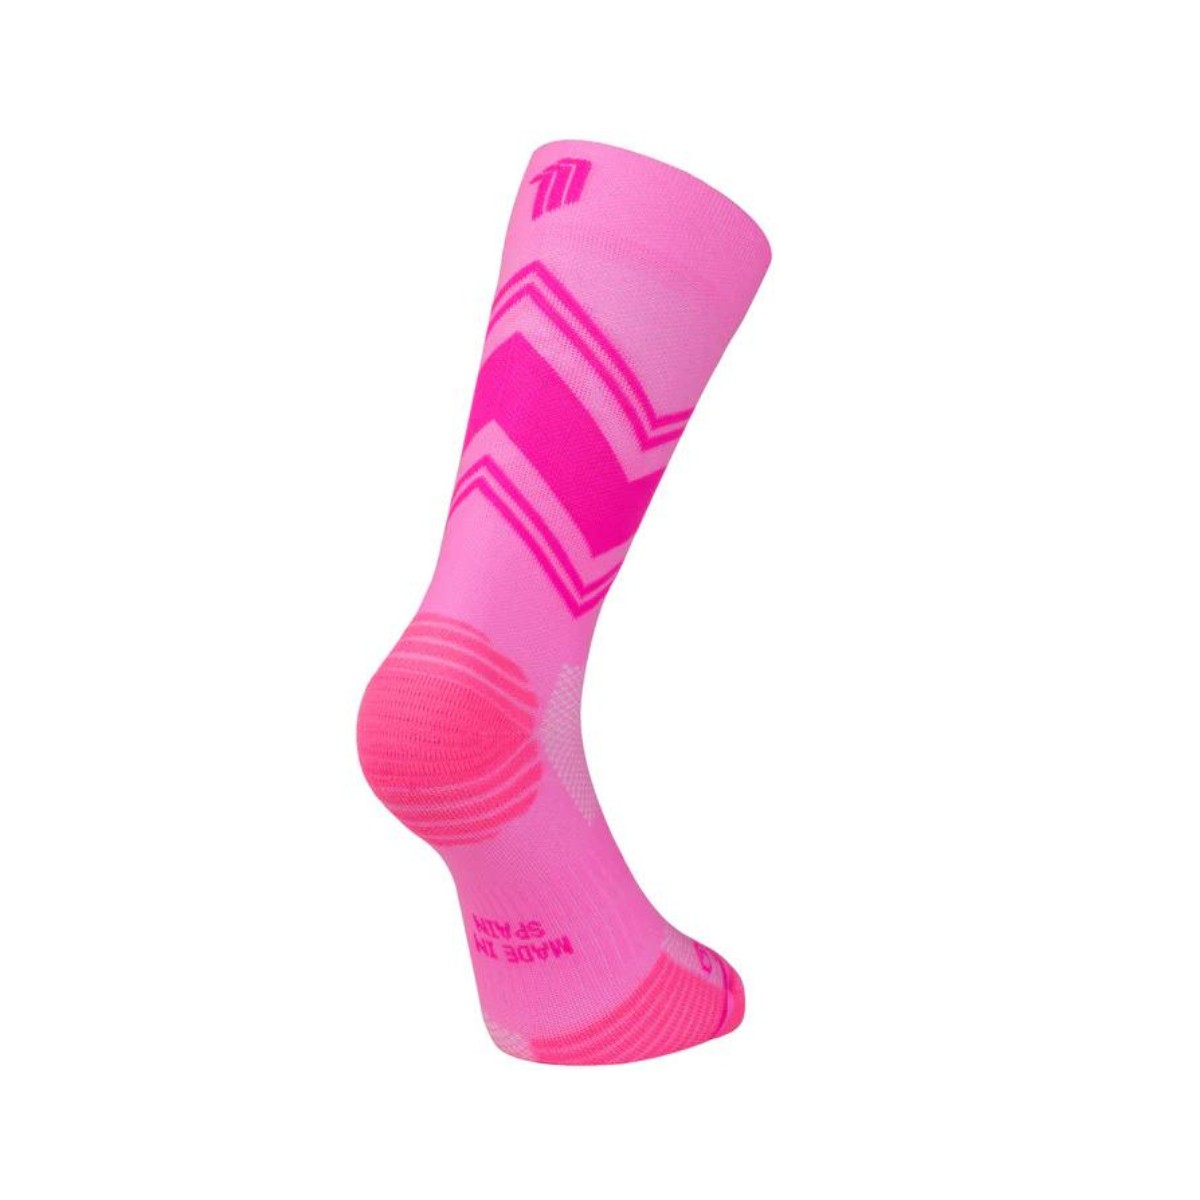 Posh günstig Kaufen-Sporcks Posh Pink Socken, Größe S. Sporcks Posh Pink Socken, Größe S <![CDATA[Sporcks Posh Pink Socken Verbessern Sie Ihr Lauferlebnis mit den Sporcks Posh Pink Socken, die für hervorragenden Halt und Komfort bei jedem Schritt sorgen.